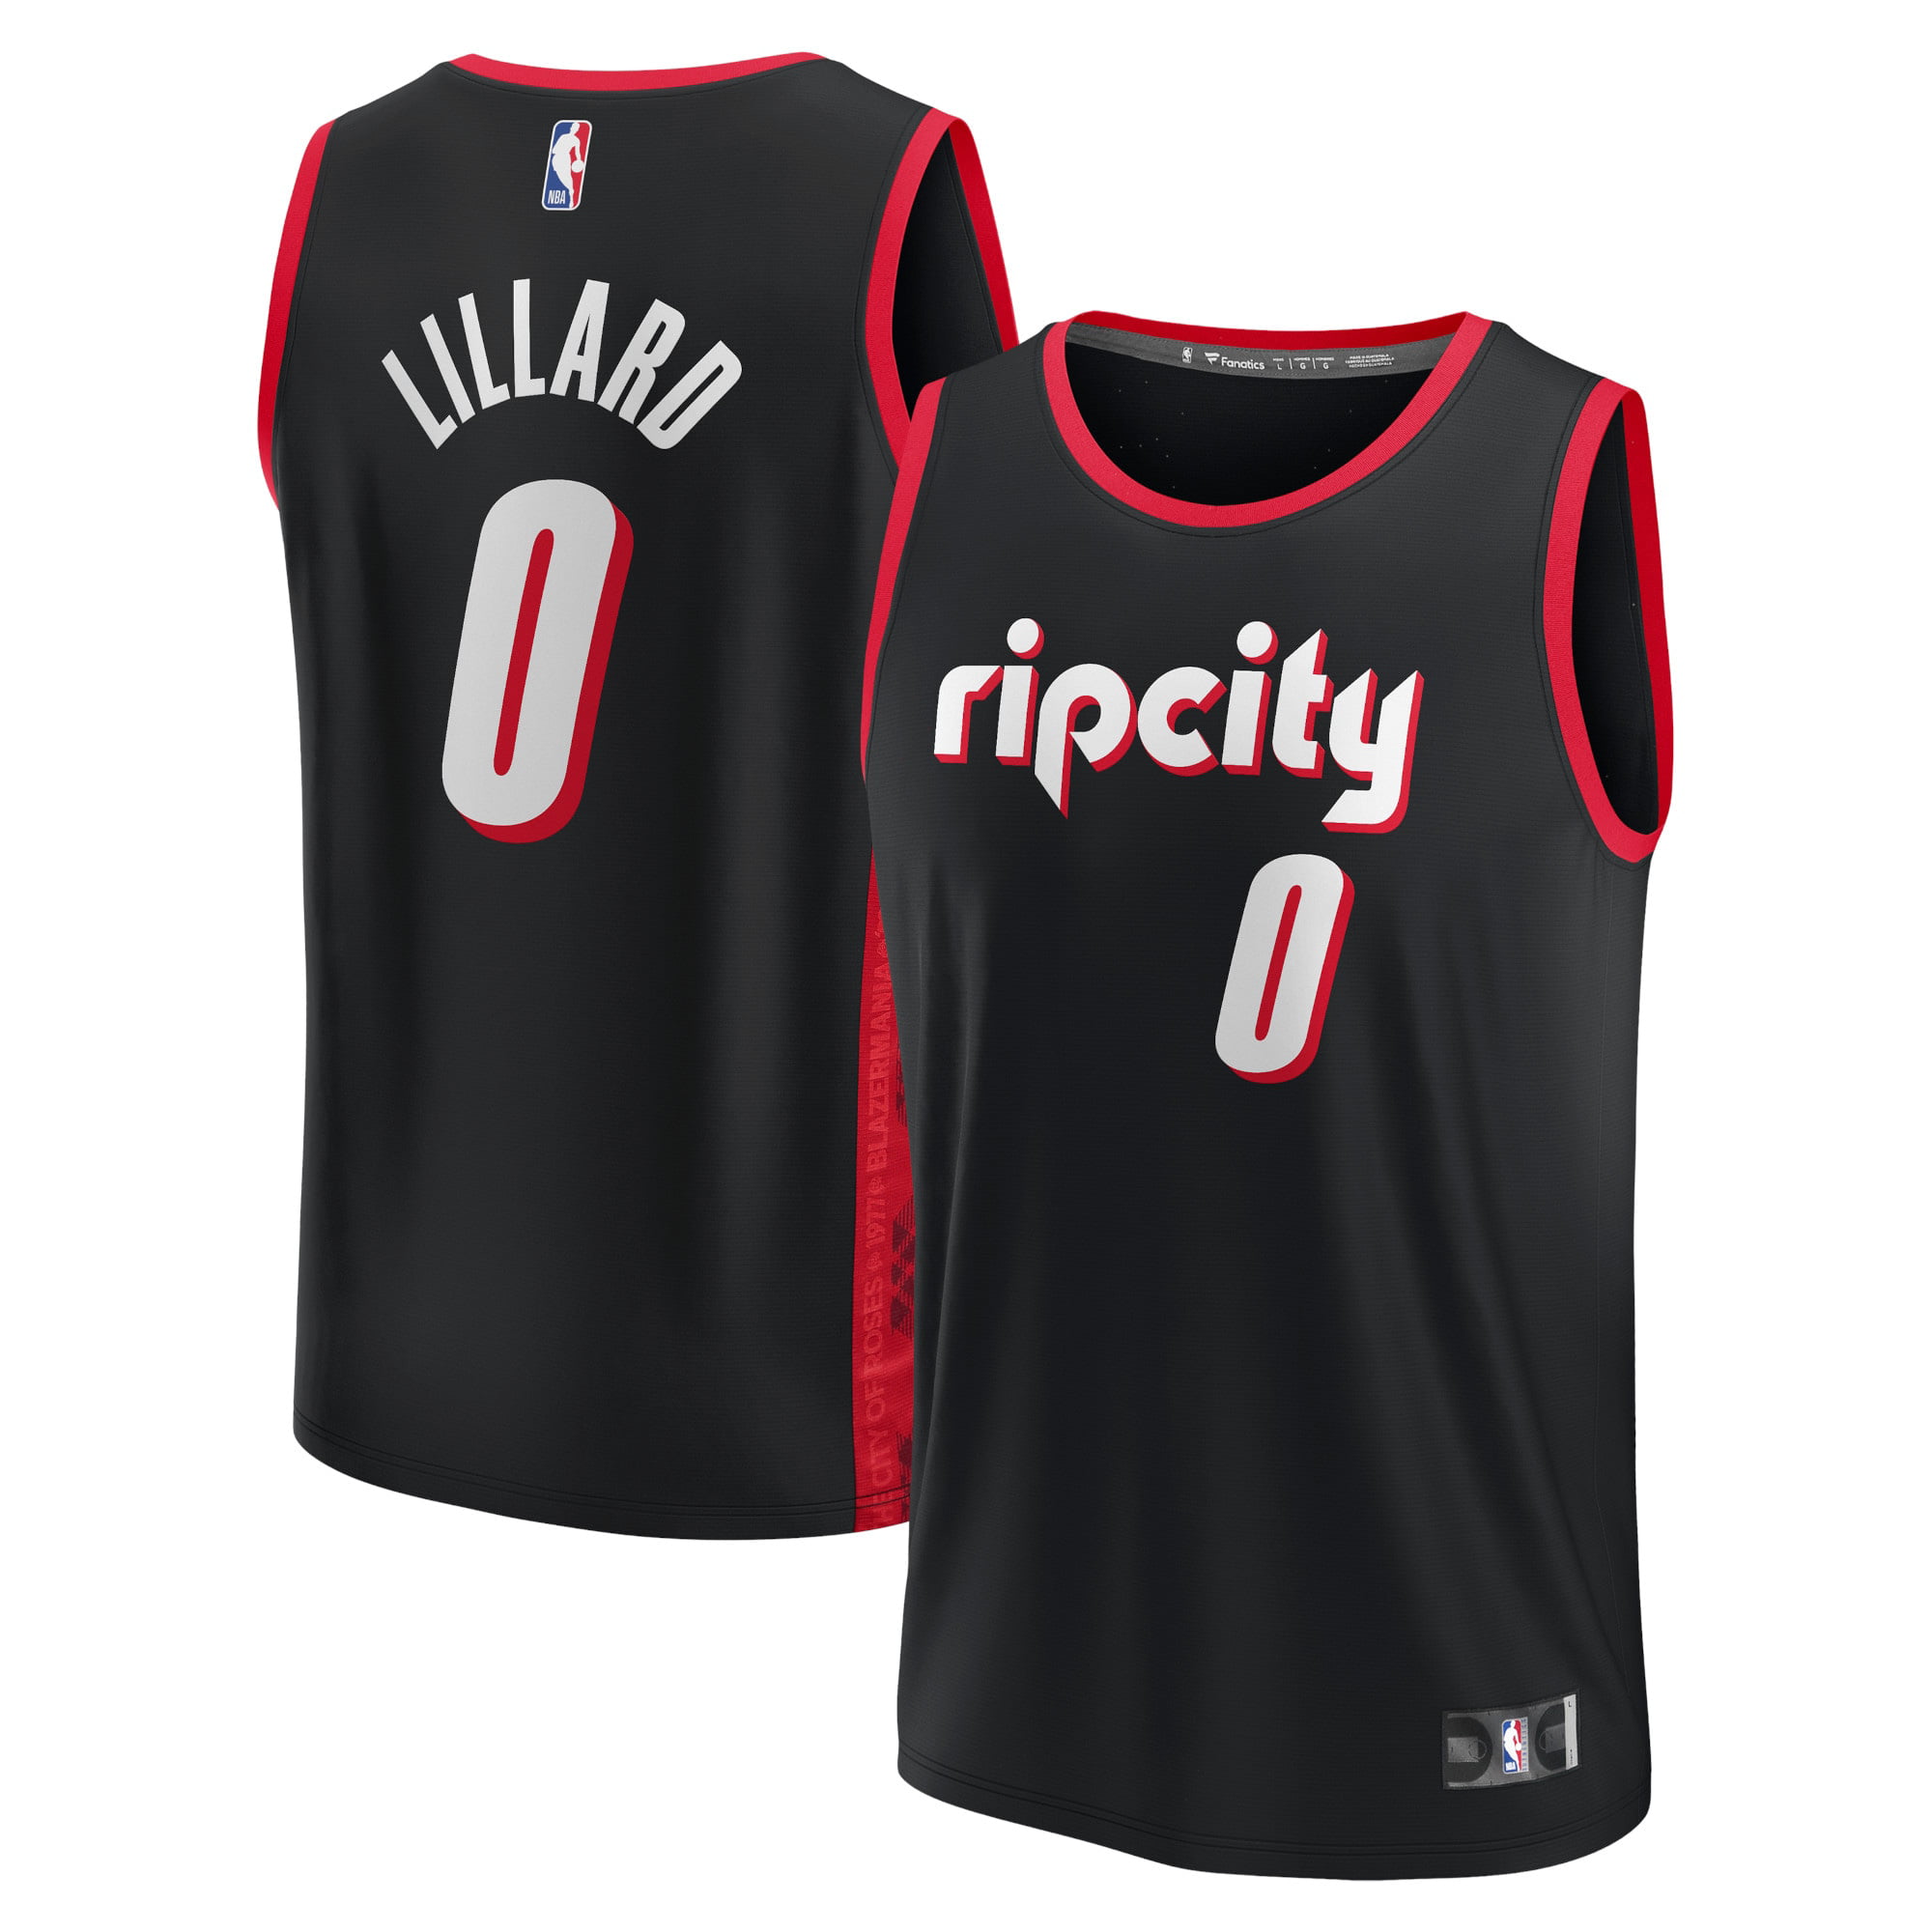 Damian Lillard #0 Portland Trail Blazers Basketball Jersey Stitched City Edition 